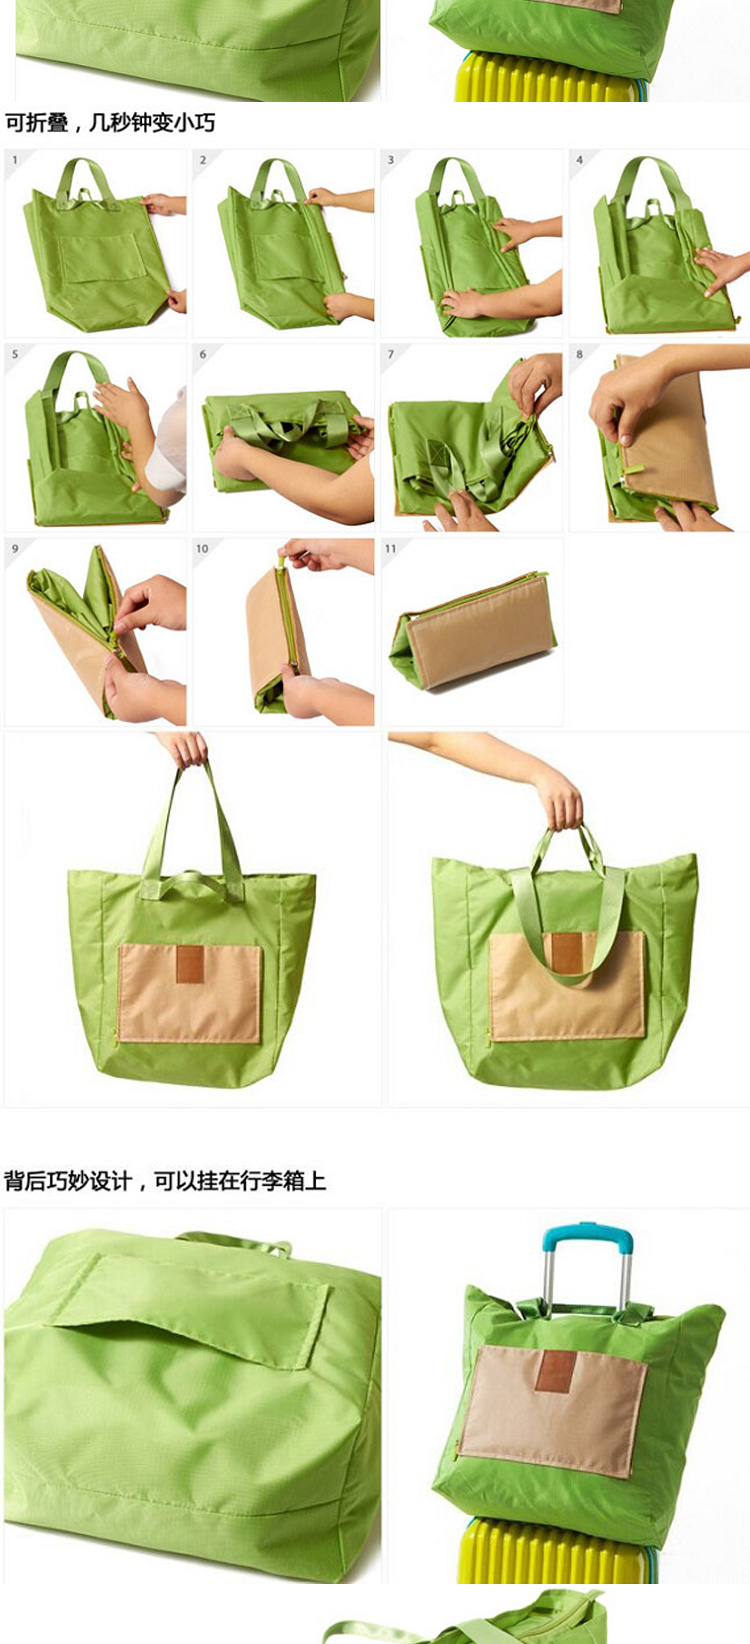 超大容量可折叠包 便携式多用包 旅行包 电脑杂物包 环保购物袋4